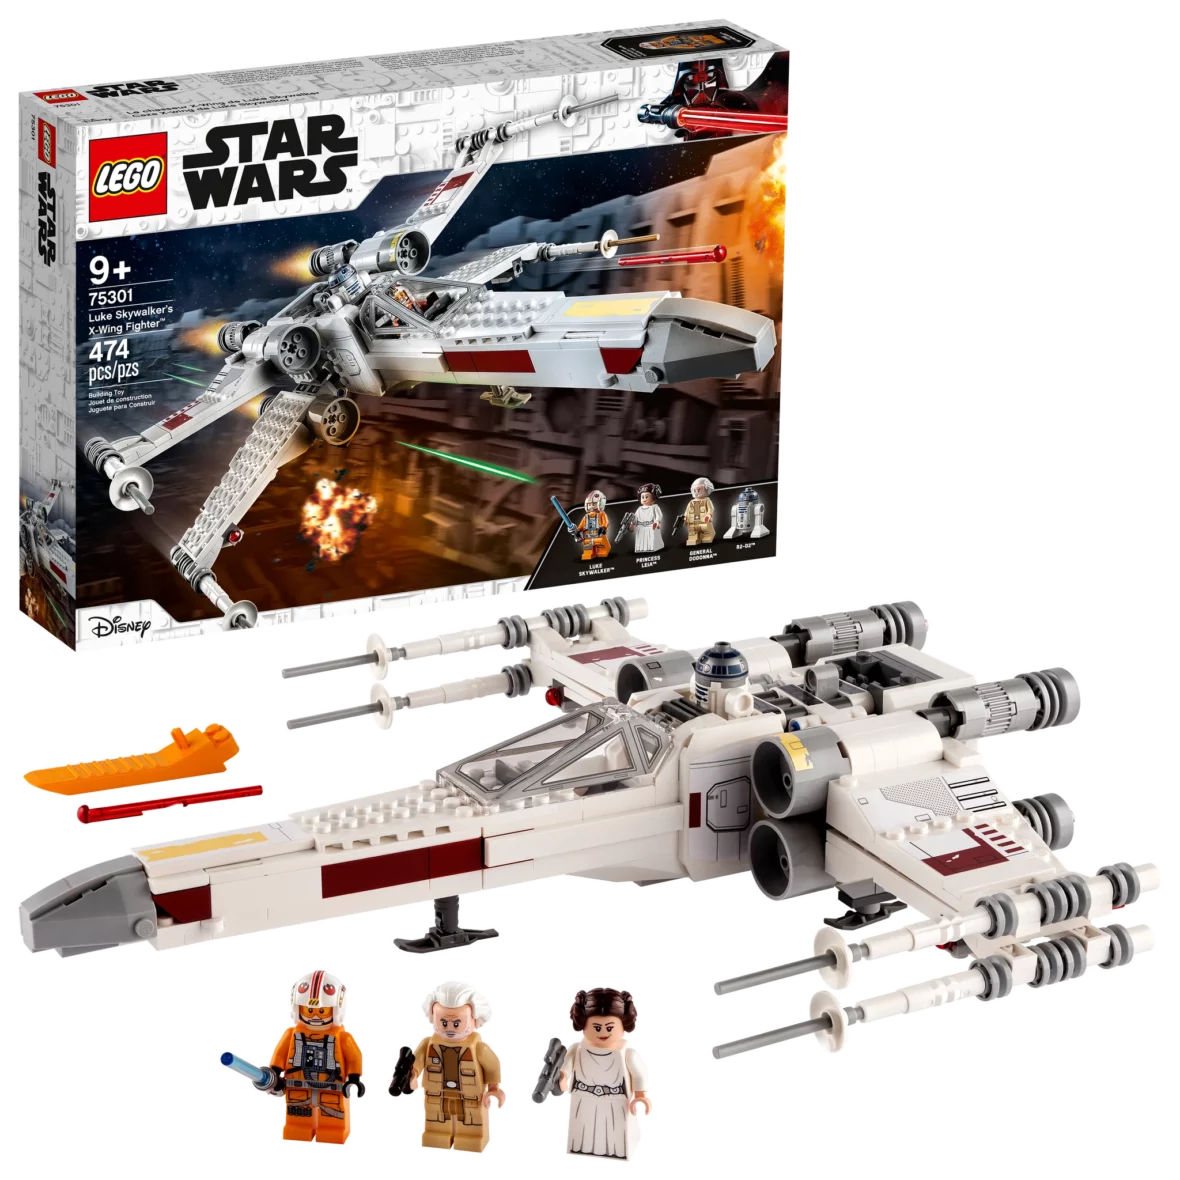 LEGO 75301 Luke Skywalker’s X-Wing Fighter